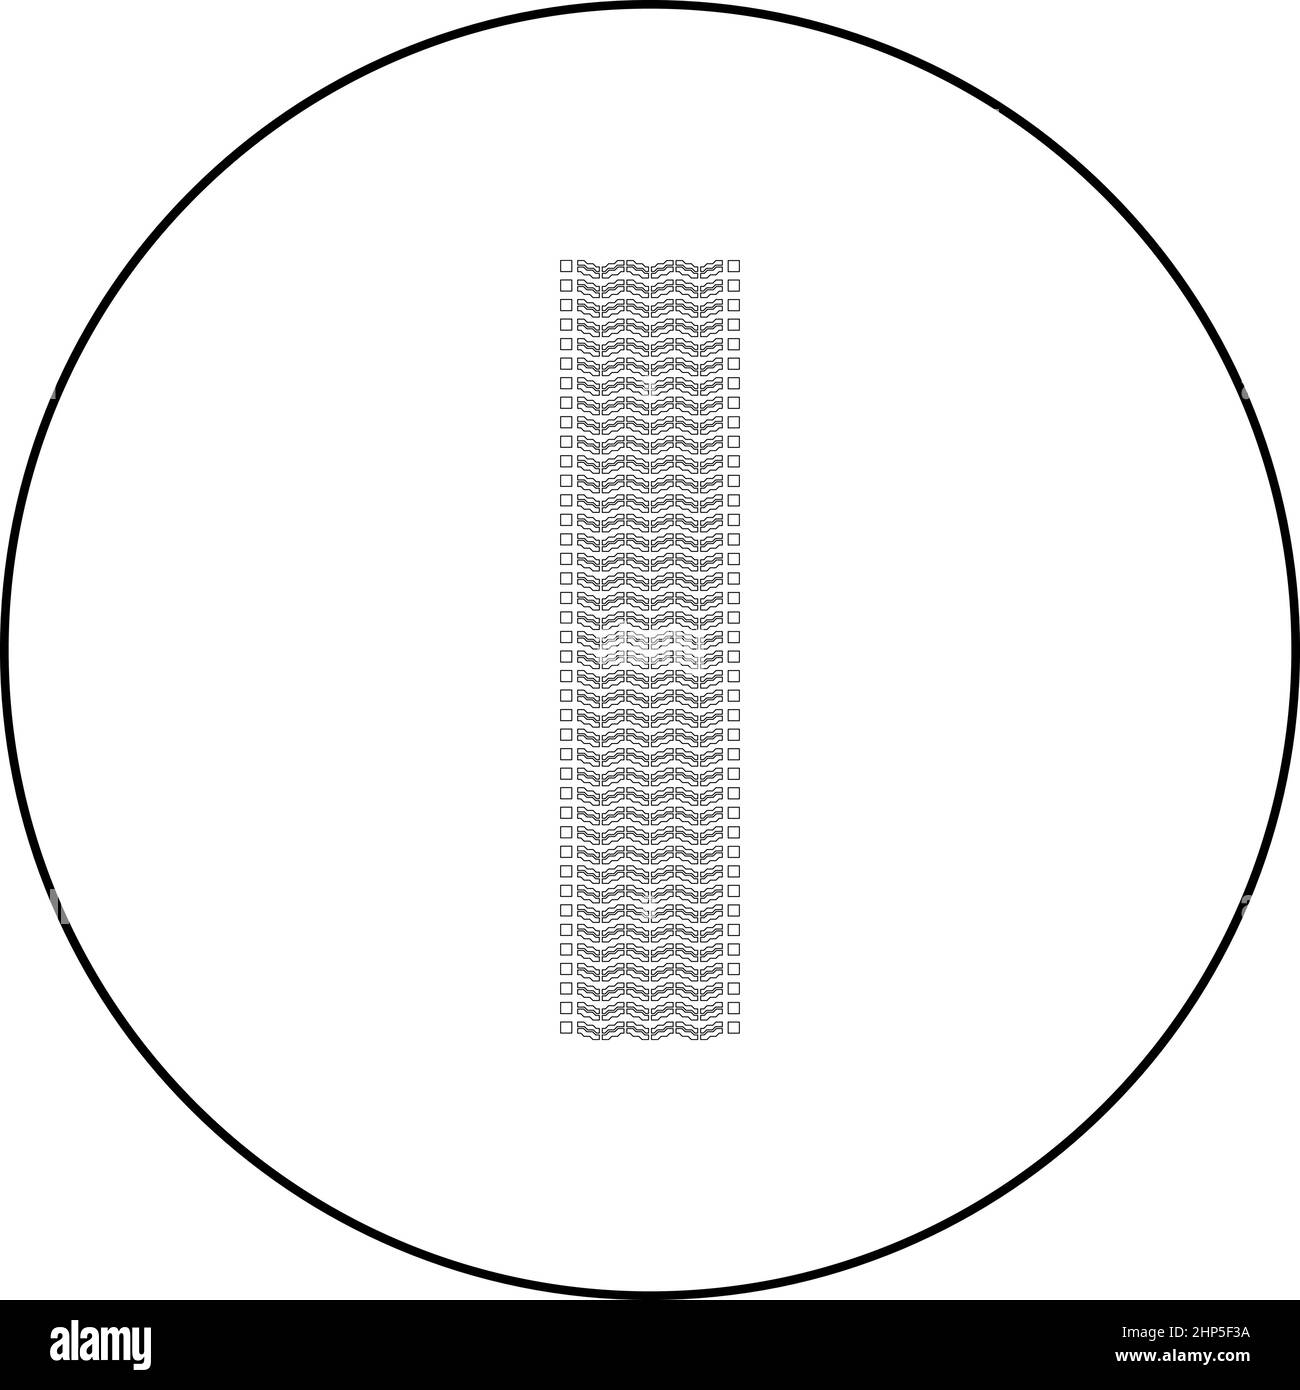 Reifenspur Druck von Rad Autoreifen Aufdruck Auto Symbol im Kreis Runde schwarze Farbe Vektor Illustration solide Umriss Stil Bild Stock Vektor